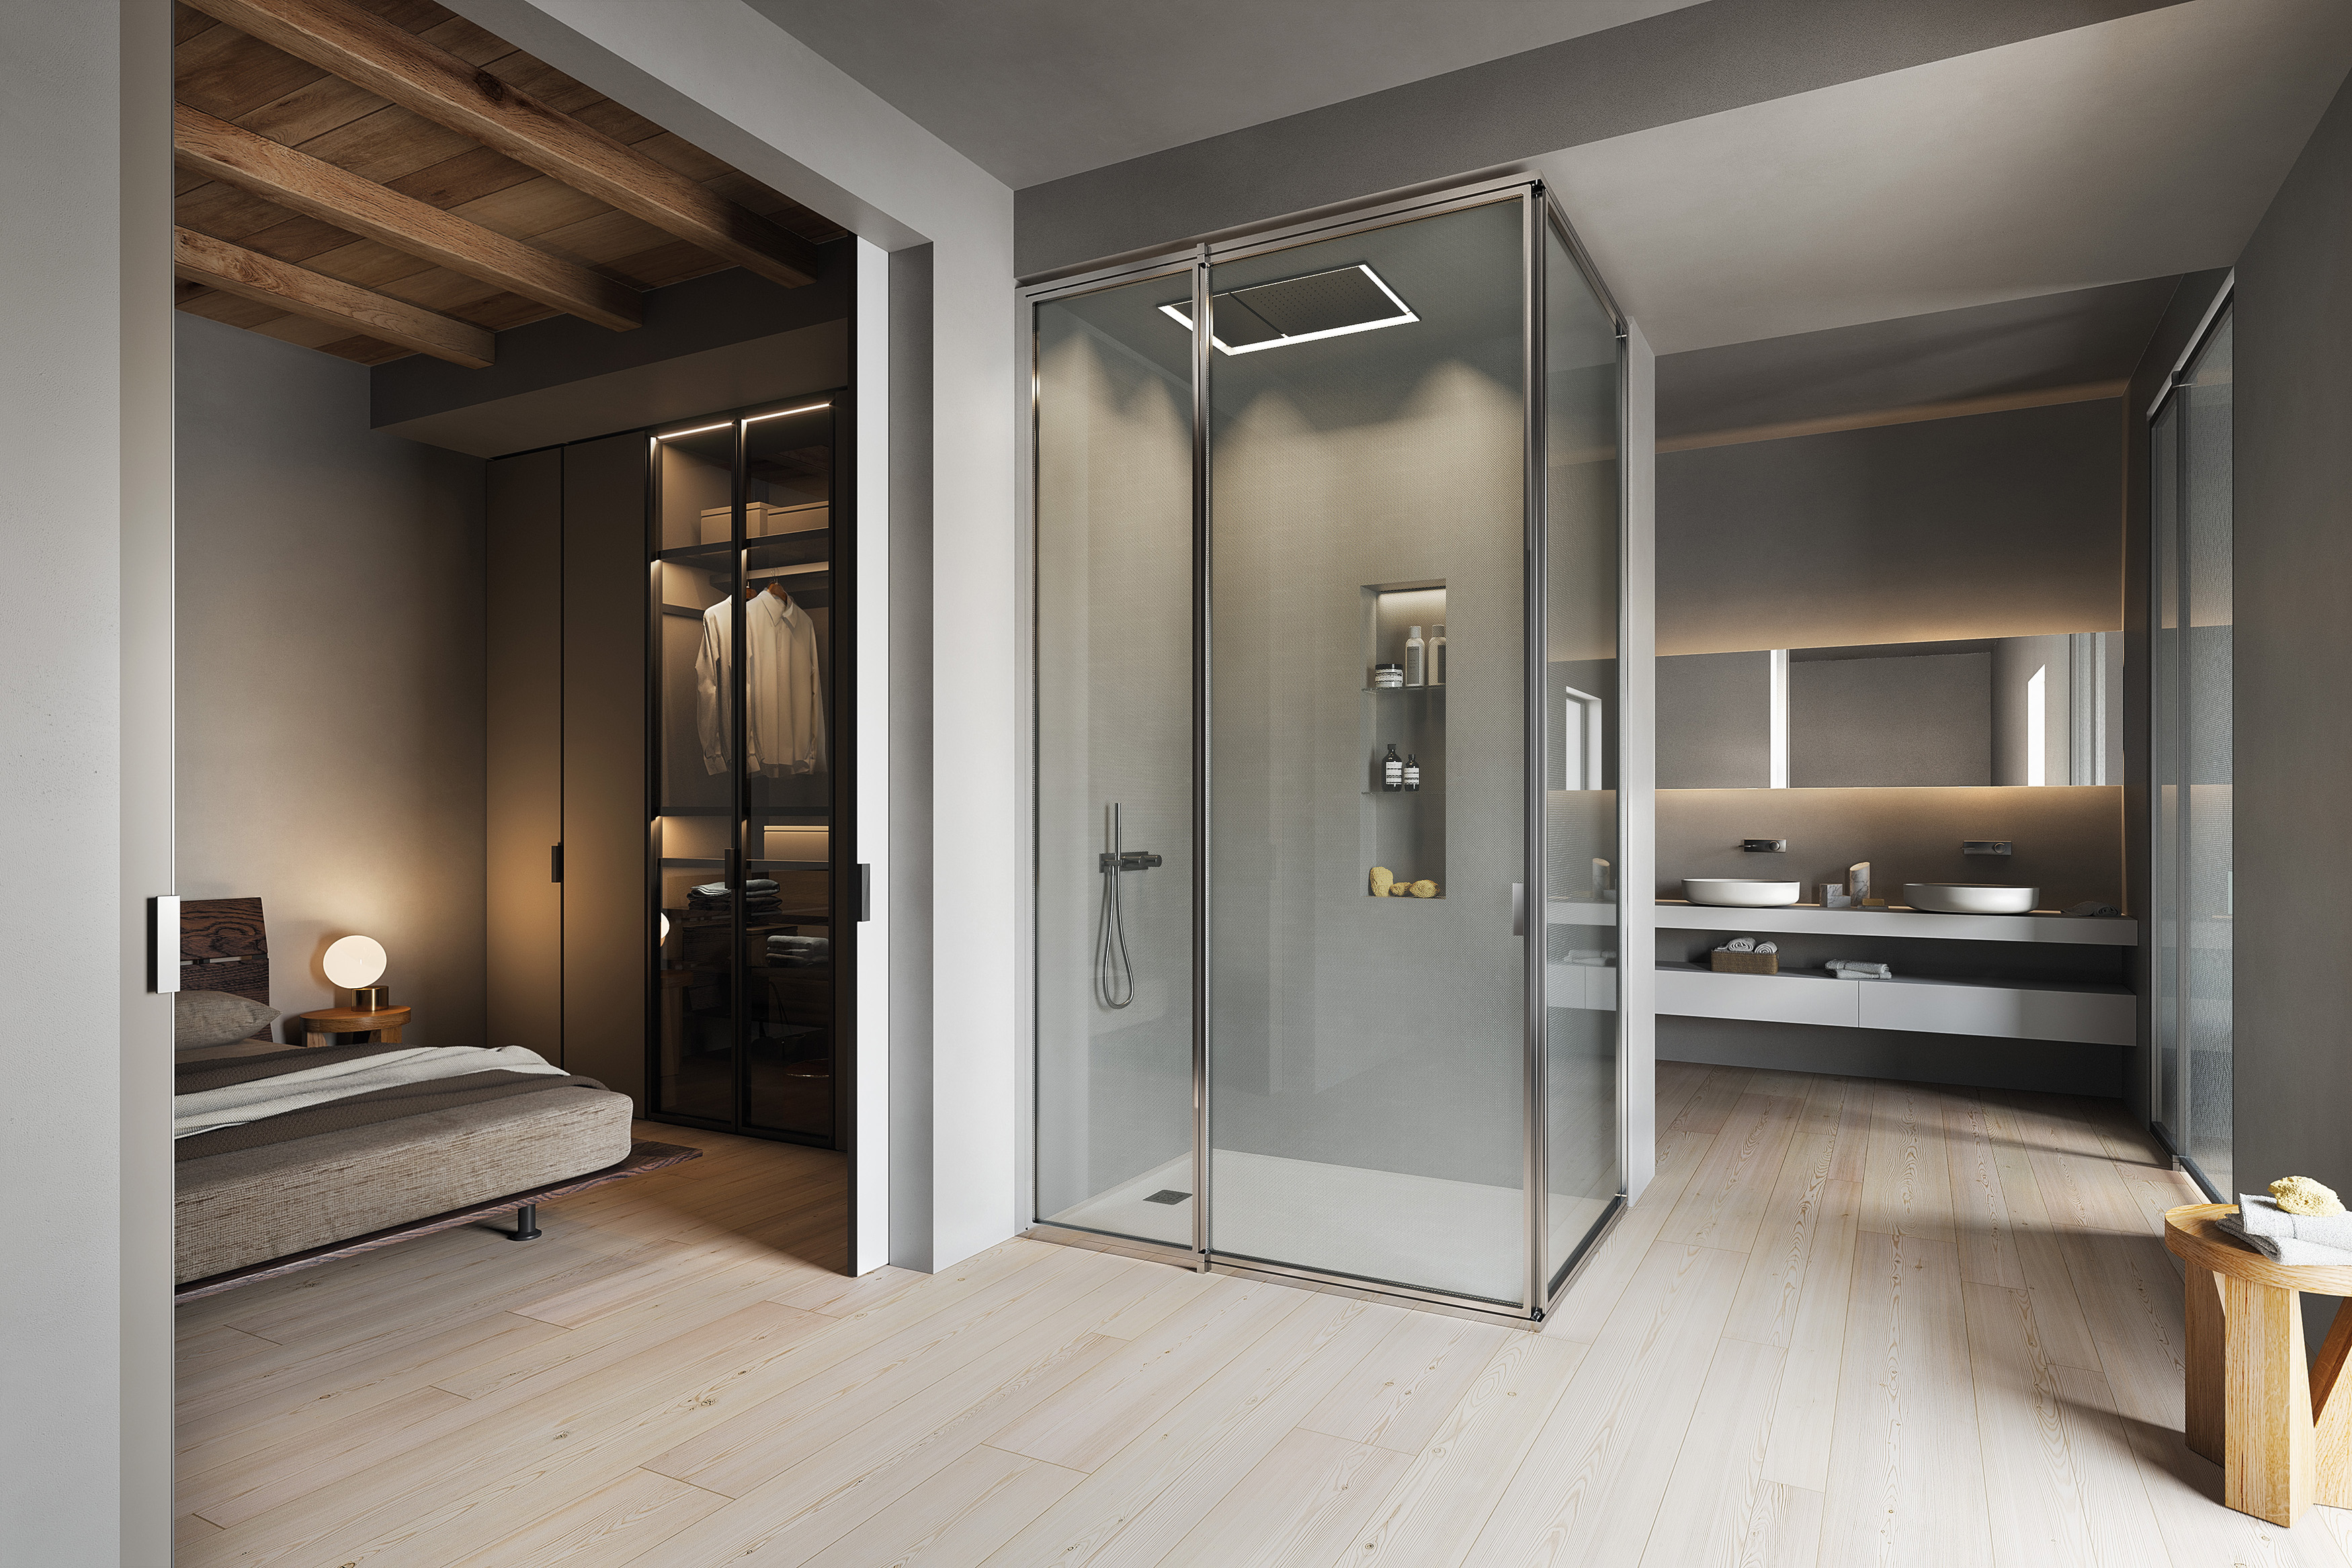 Dans cette configuration, la cabine de douche et les toilettes, indépendants, sont séparés et fermés par des éléments coordonnés